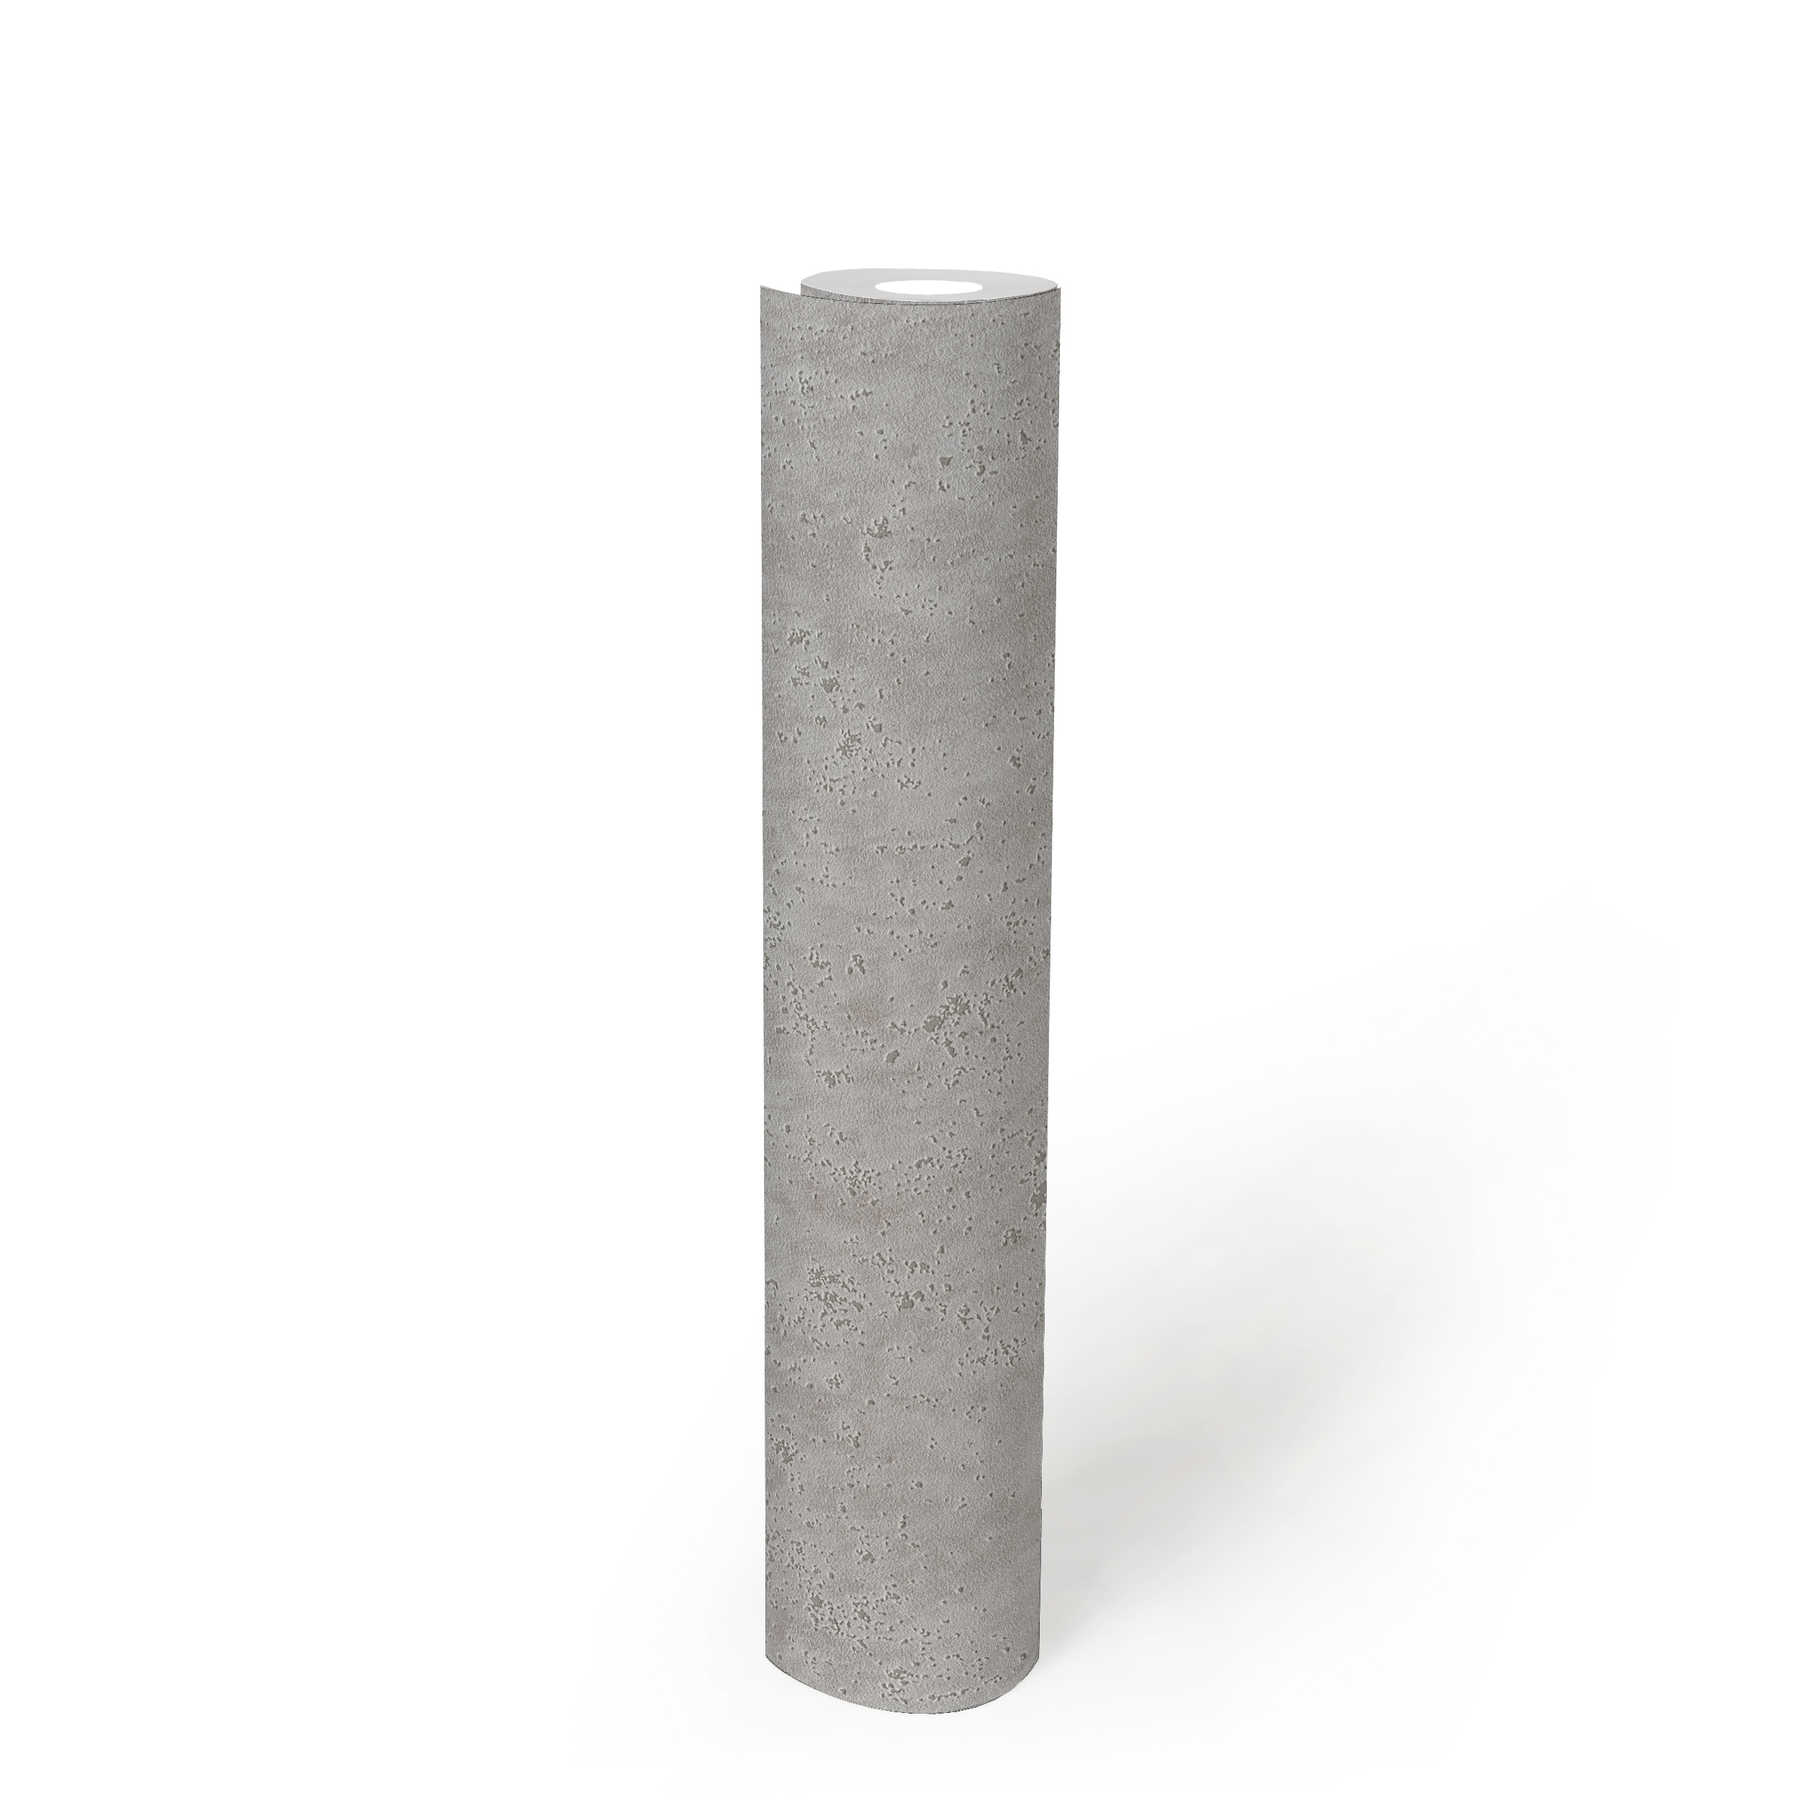             Papier peint aspect plâtre avec structure de surface rugueuse - gris
        